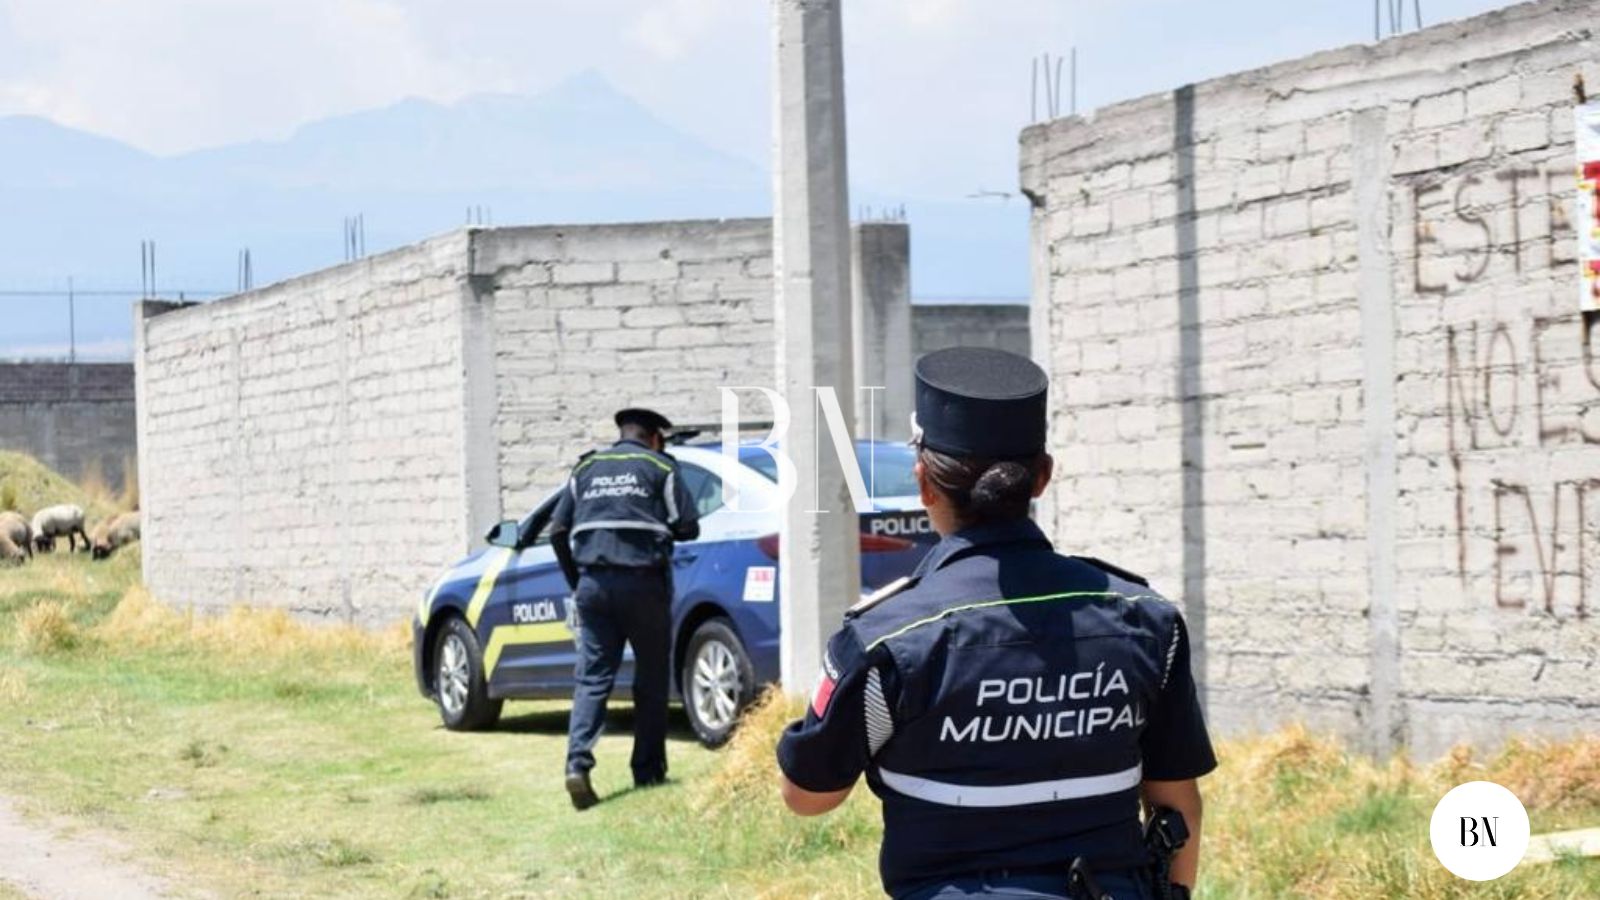 Sigue violencia en Toluca; tiran cadáver en Cacalomacan